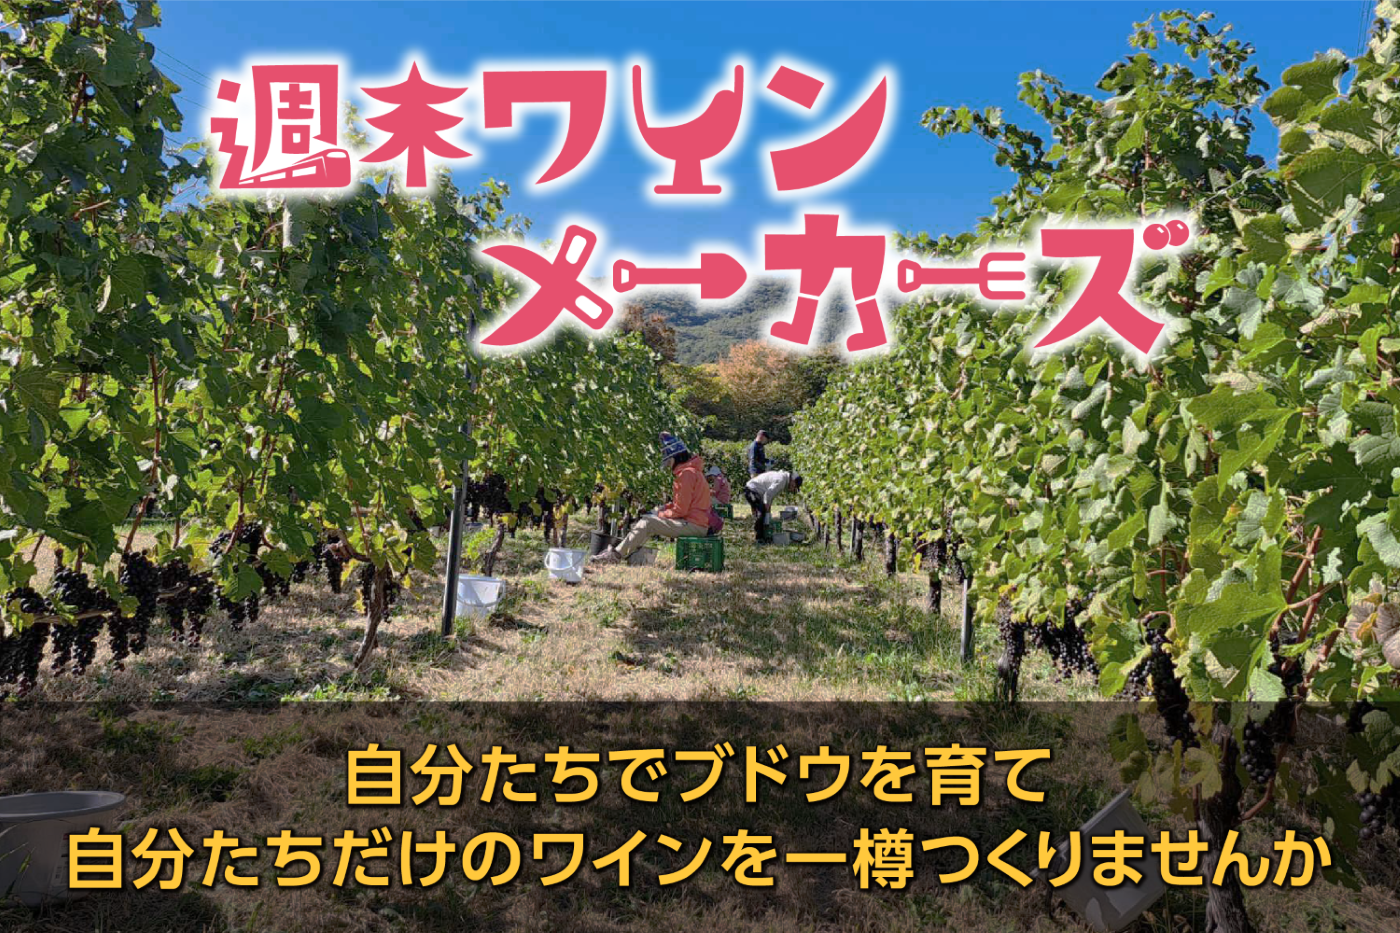 地域資源であるワインを活用し、関係人口の創出を目指す　
～長野・塩尻市で『週末ワインメーカーズ』参加者を募集～